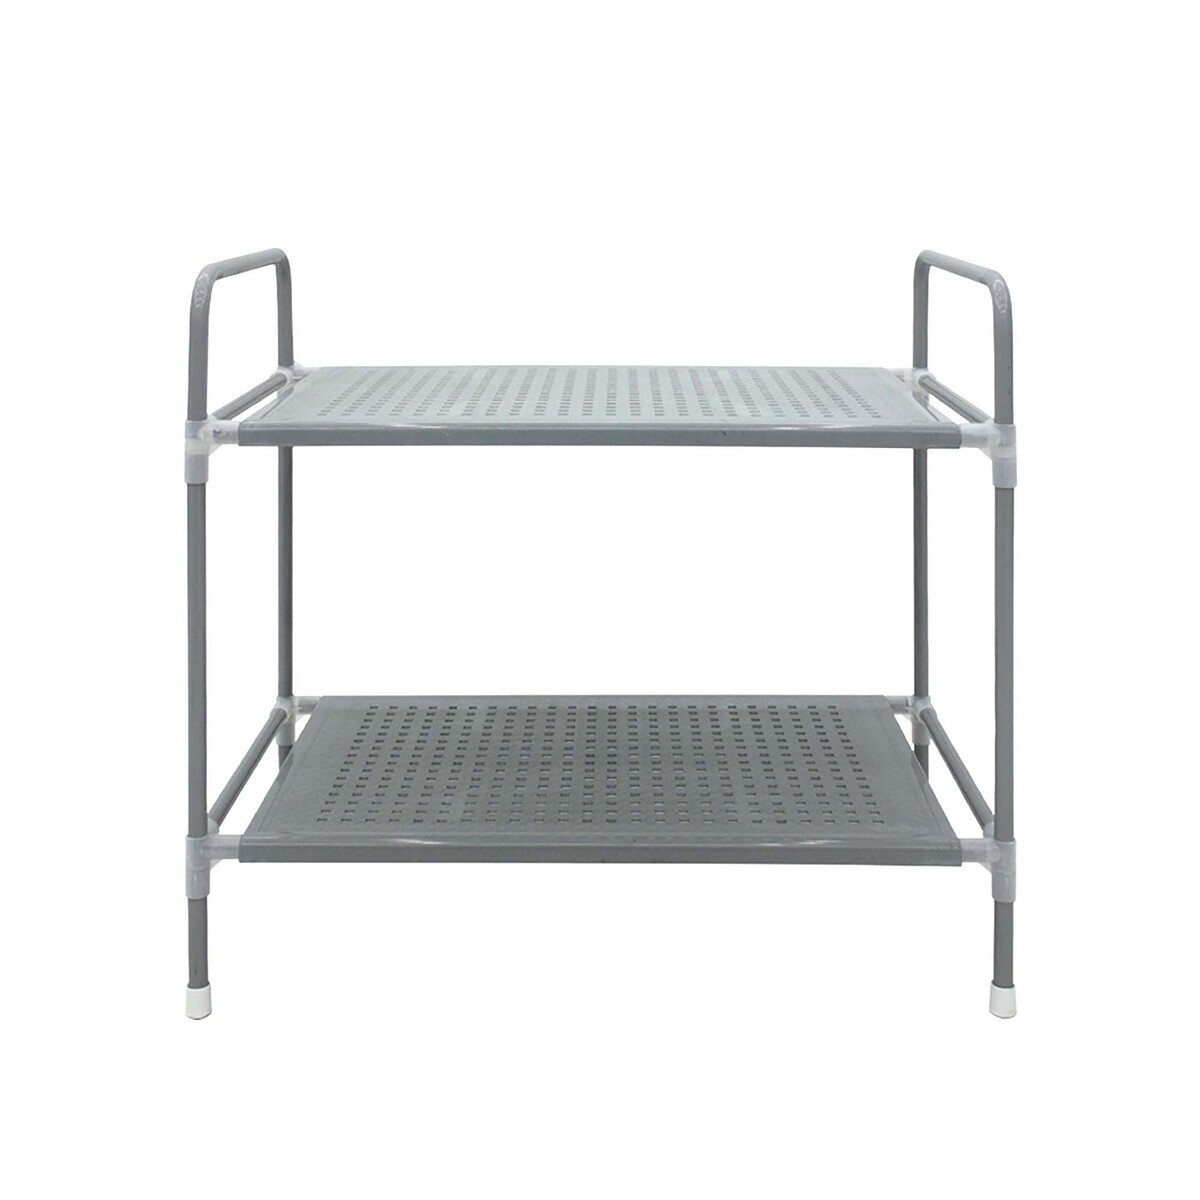 Maple Leaf 2Layer Organization Shelf, W30xL54xH50cm KT-SS02 Grey